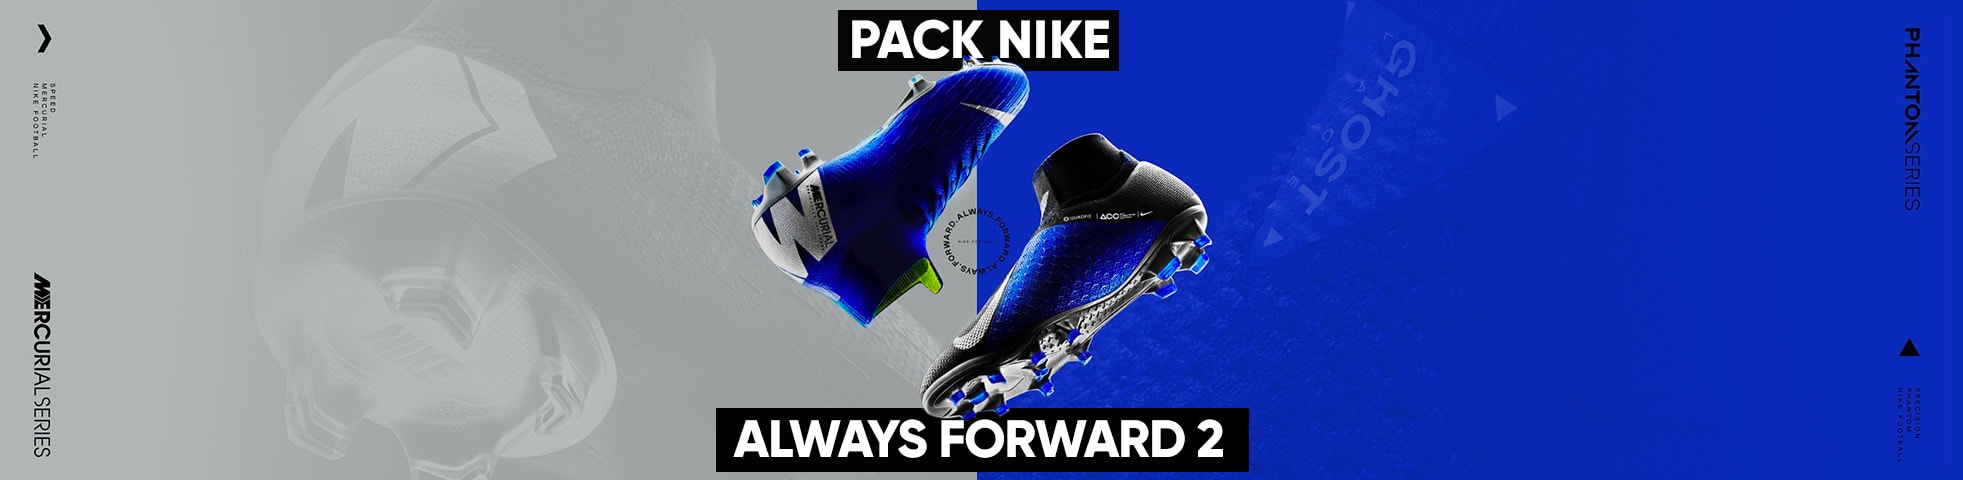 Pack Nike Always Forward